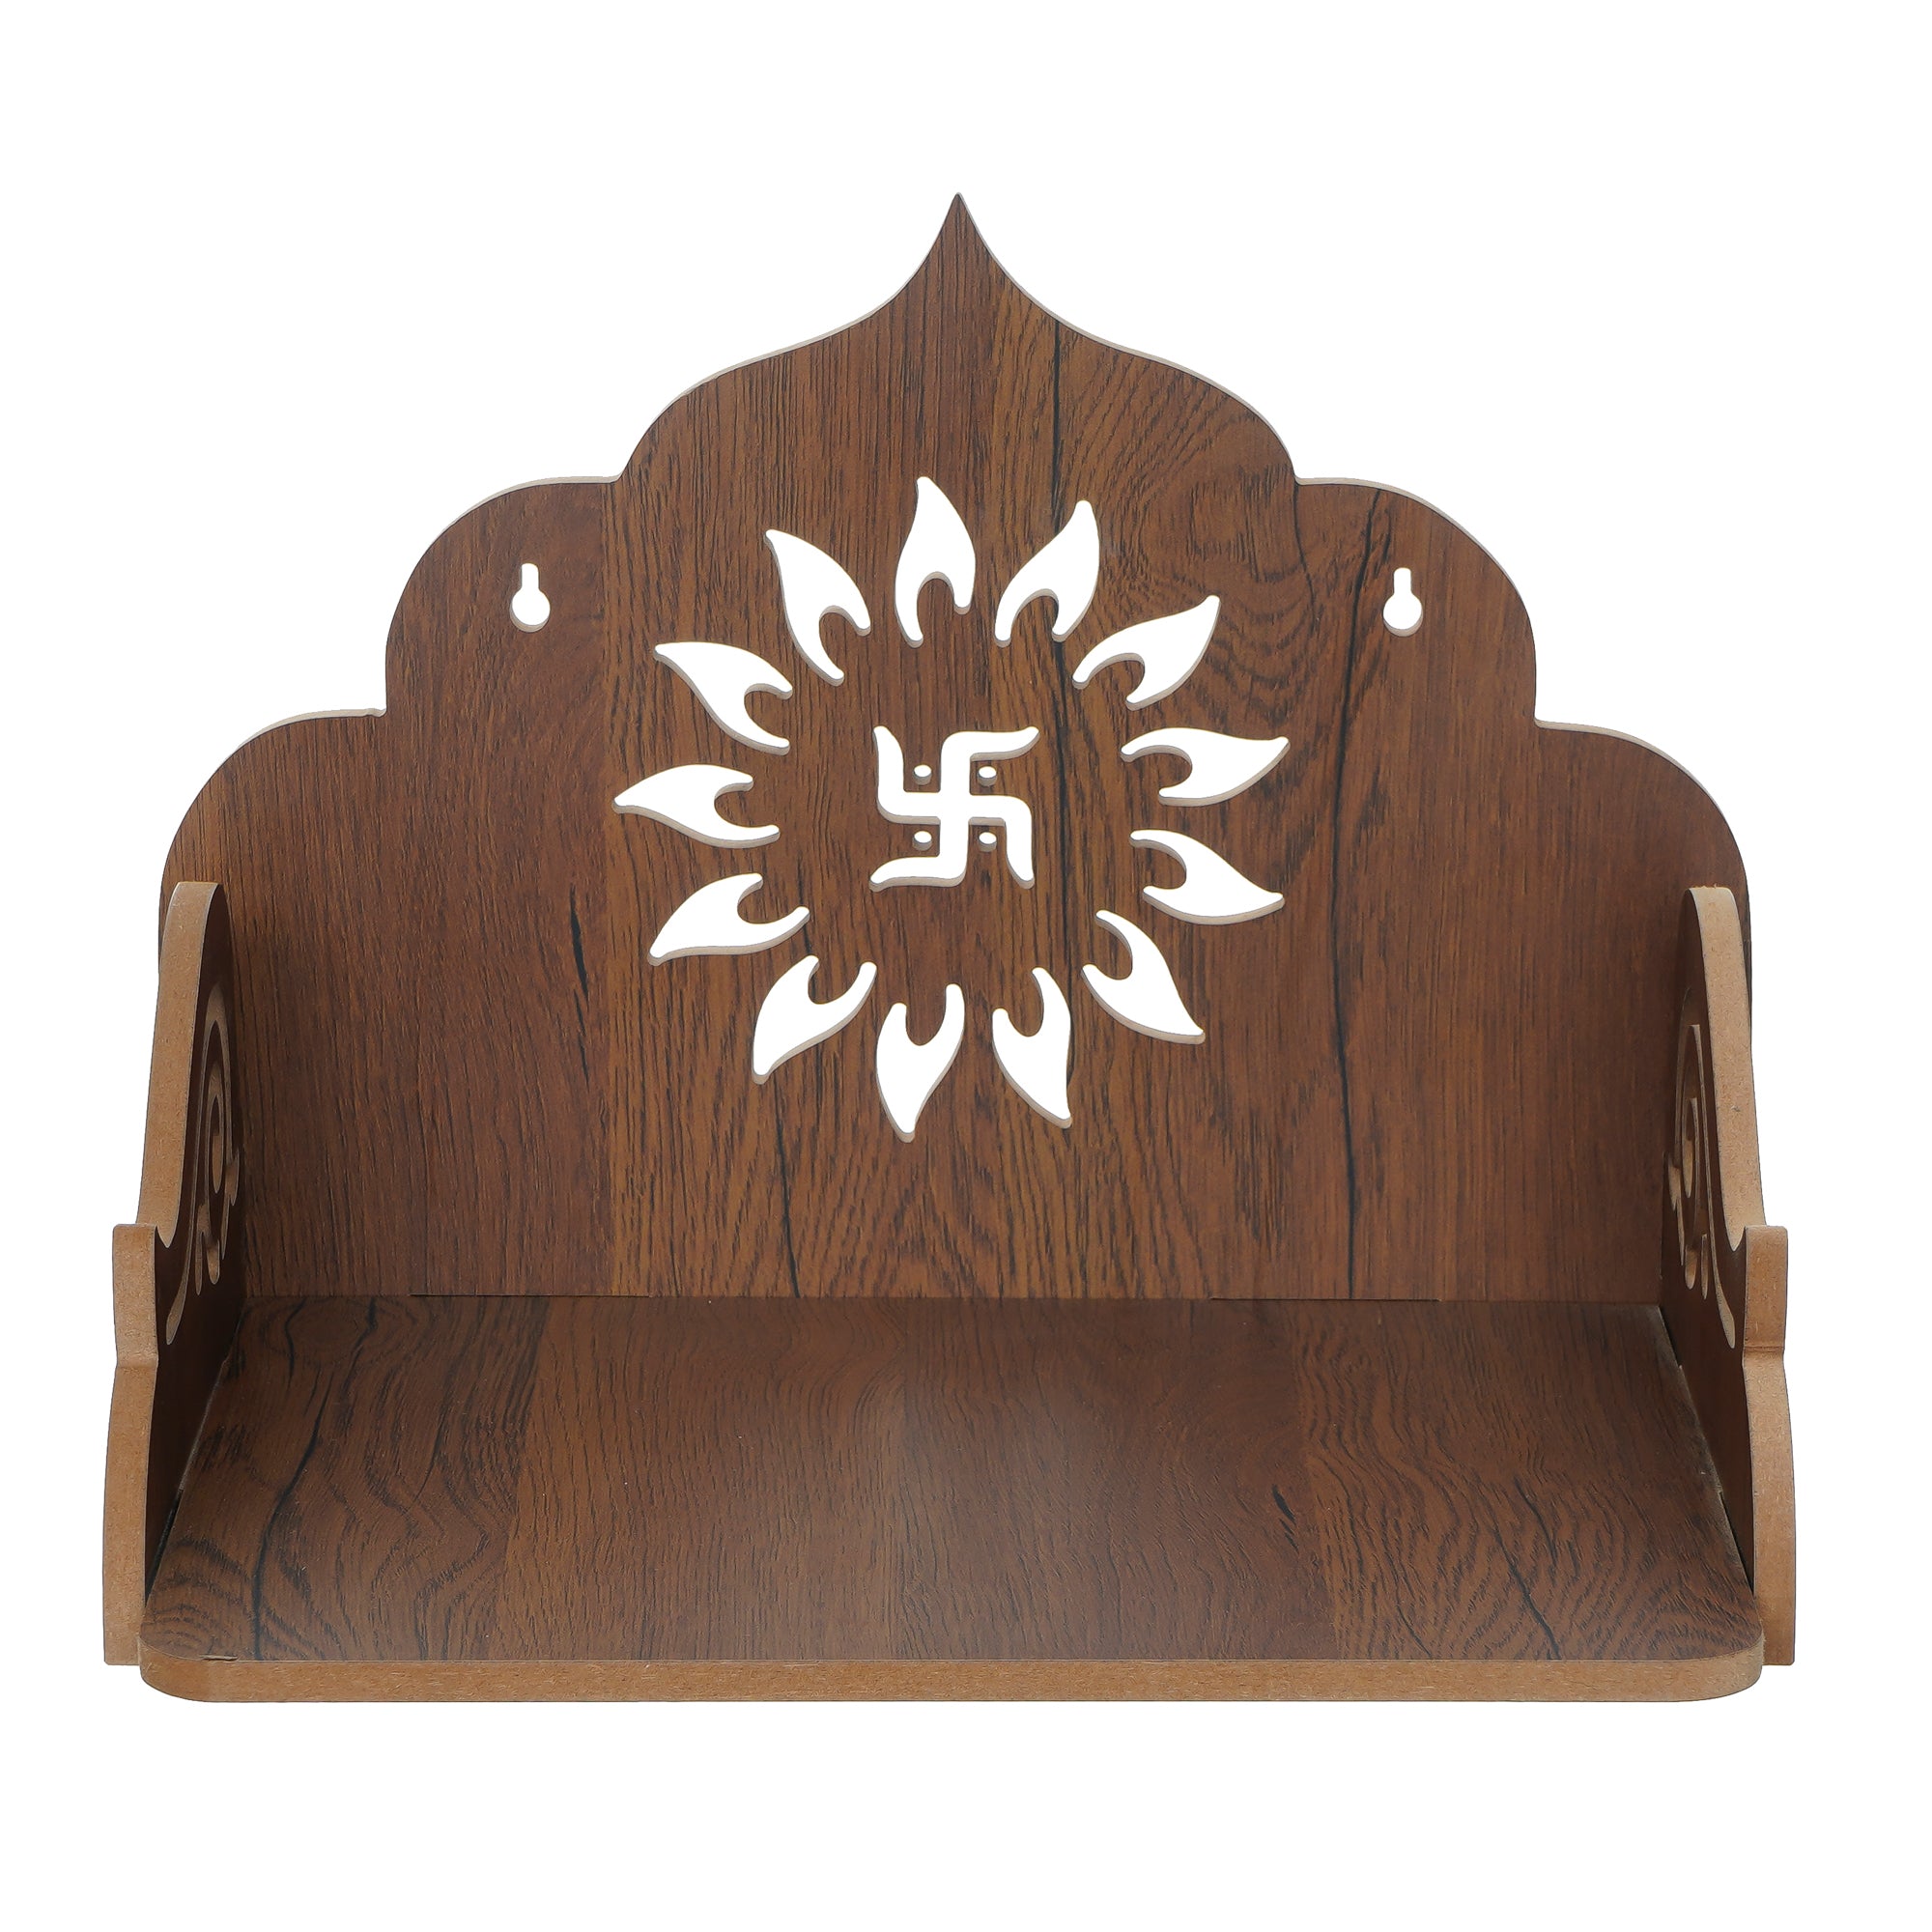 Swastik Design Laminated Wood Pooja Temple/Mandir 5